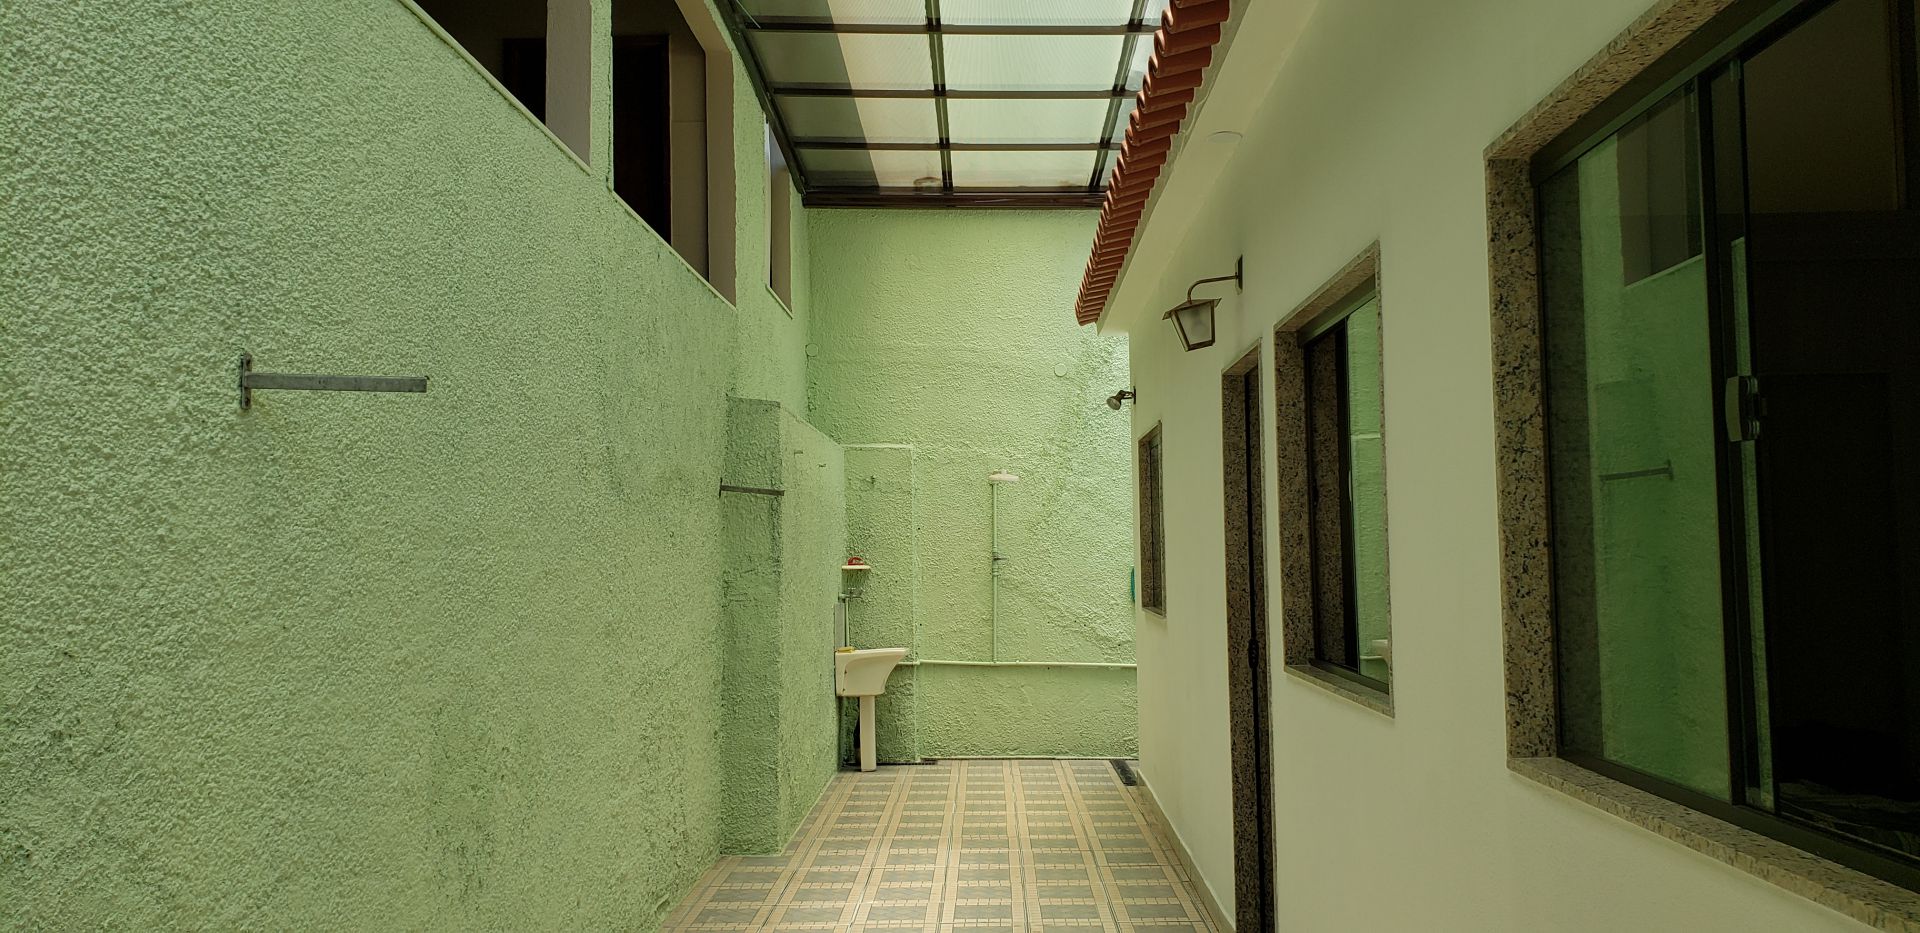 FOTO 26 - Casa 3 quartos à venda Vila Valqueire, Rio de Janeiro - R$ 860.000 - RF268 - 27